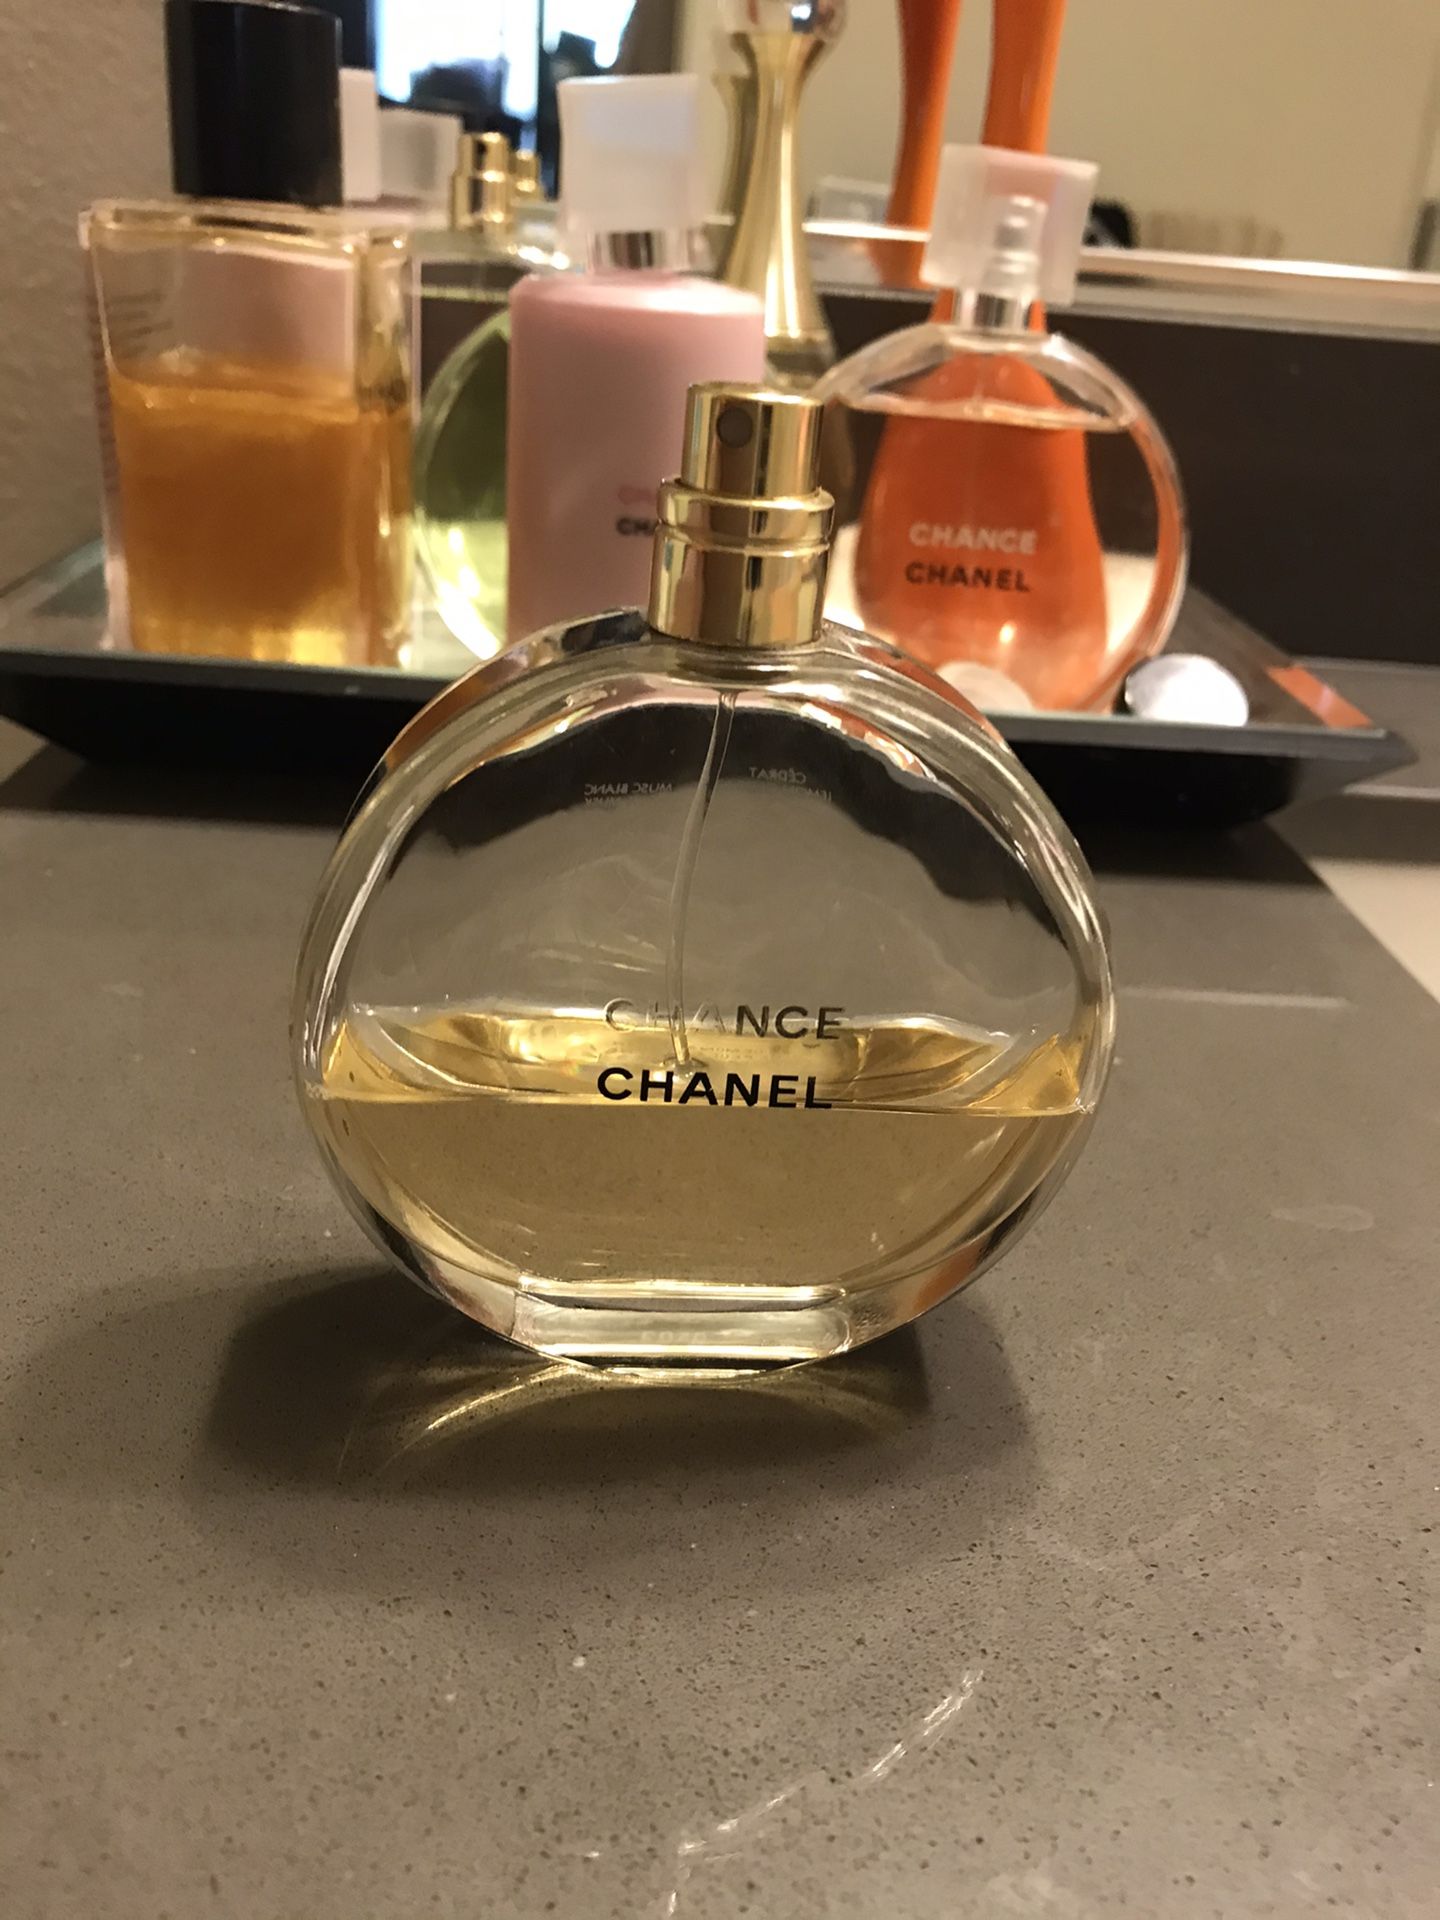 Chanel chance eau de perfume 100ml